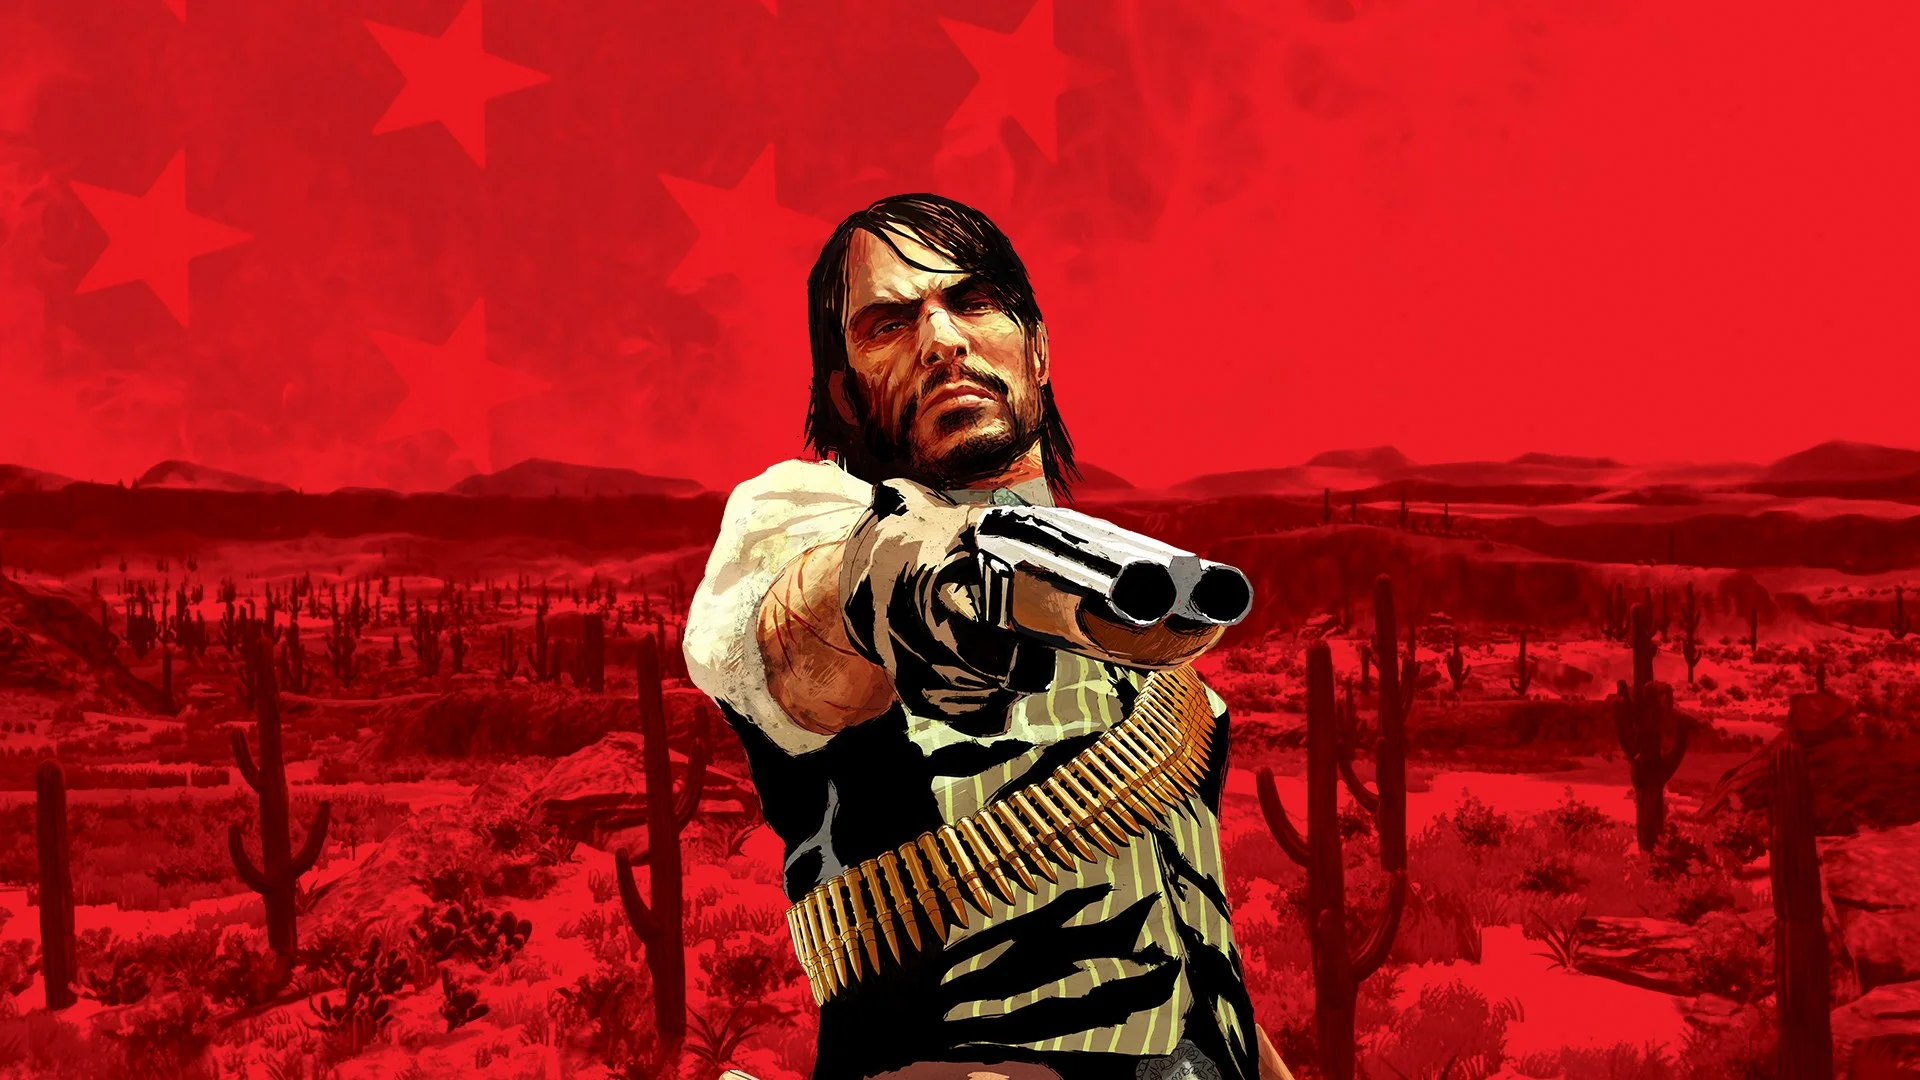 Инсайдер сообщил о решении Rockstar отказаться от ремастеров Red Dead Redemption и GTA IV - изображение 1